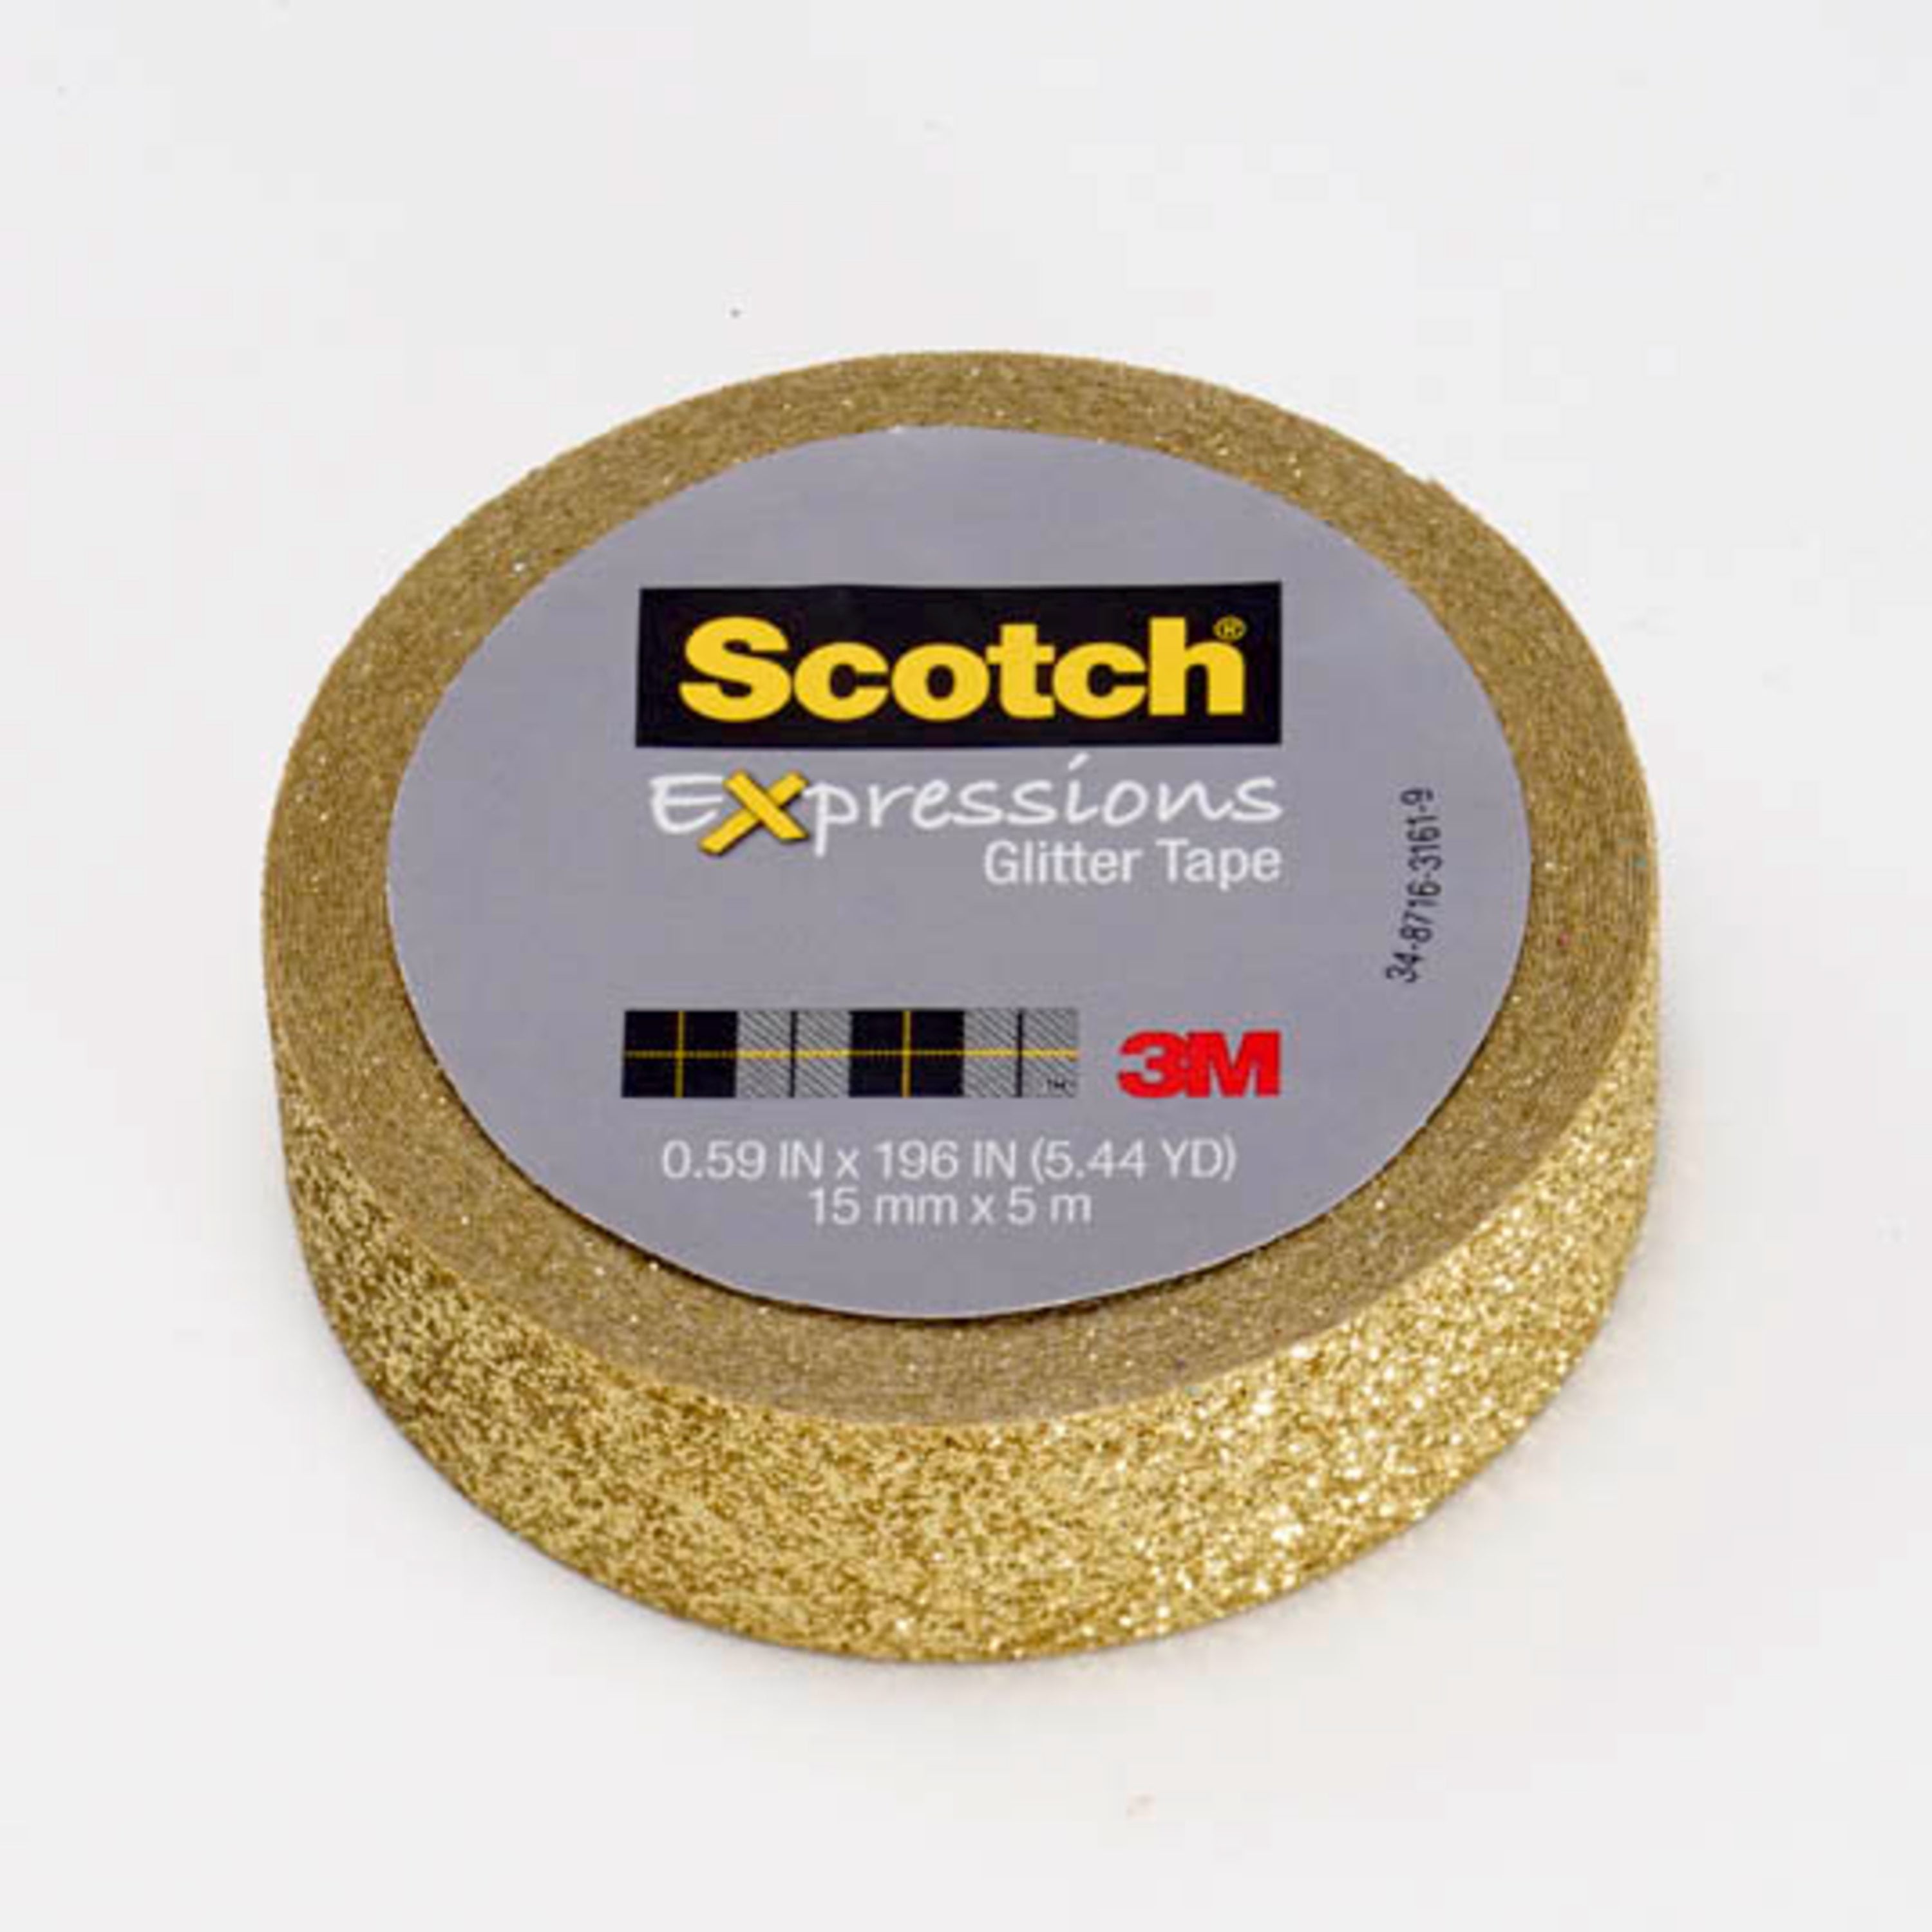 Scotch Expressions Glitter Tape Gold Glitter .59 in x 196 in